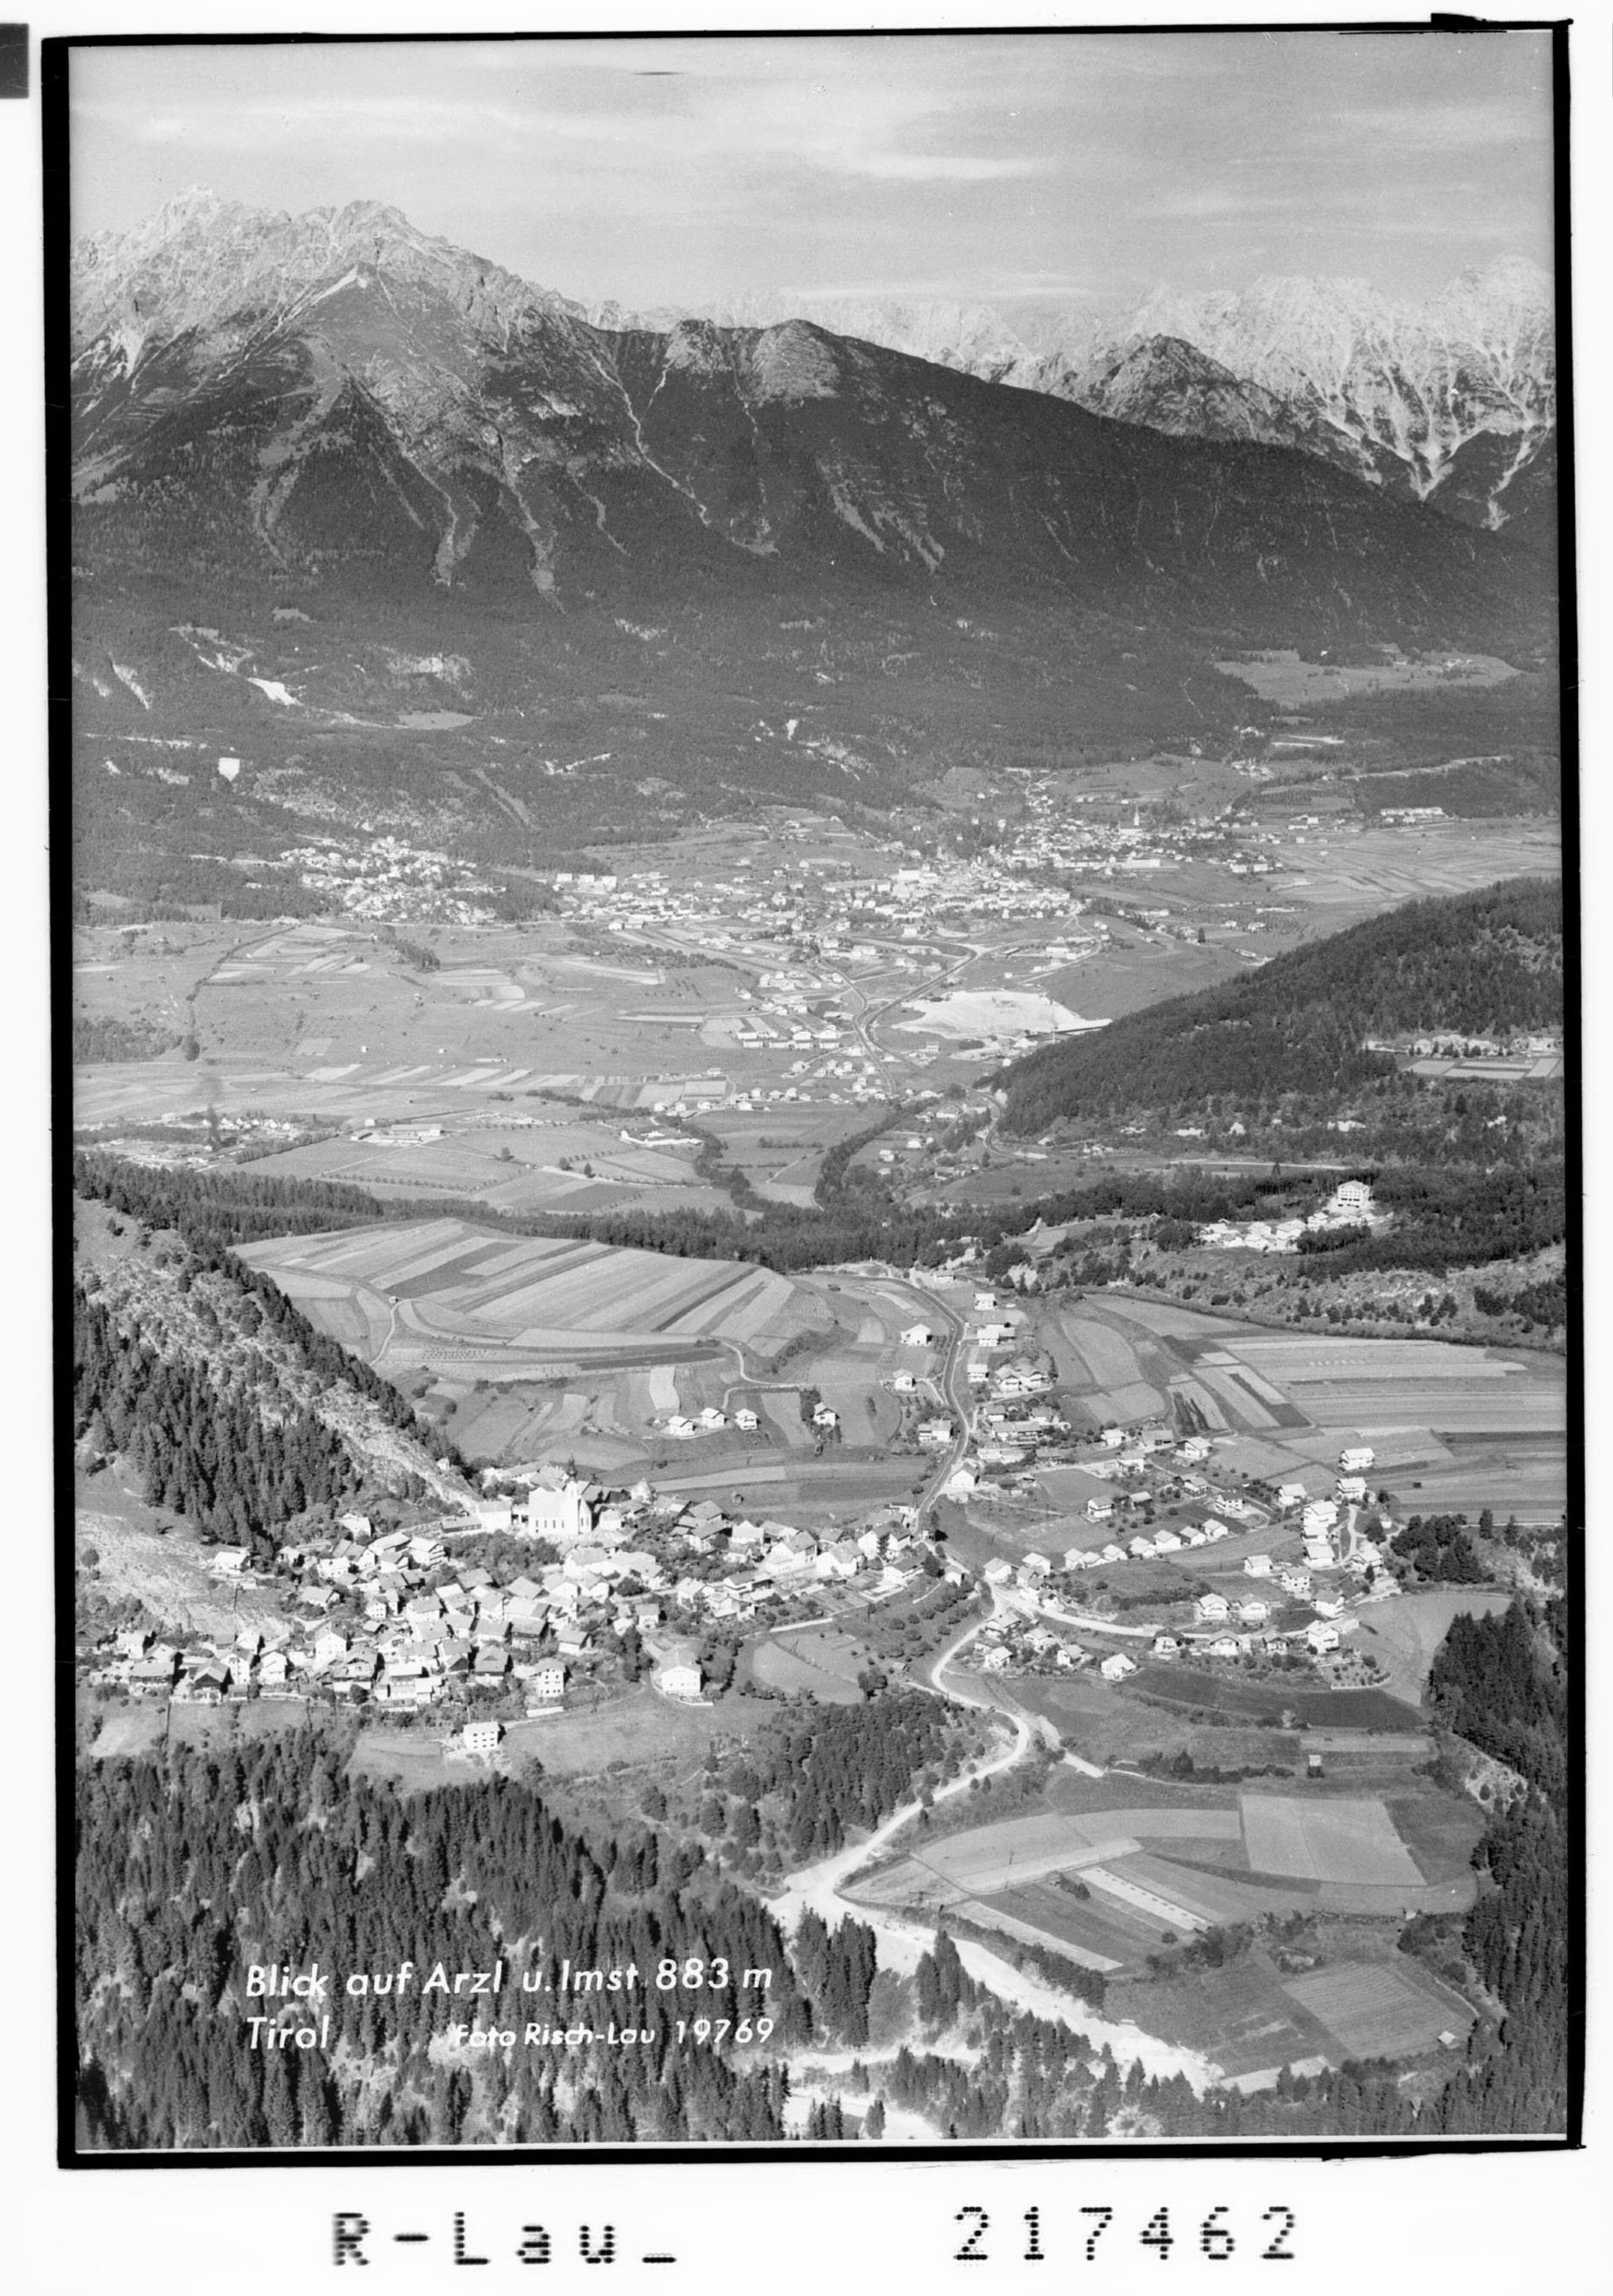 Blick auf Arzl und Imst 883 m / Tirol></div>


    <hr>
    <div class=